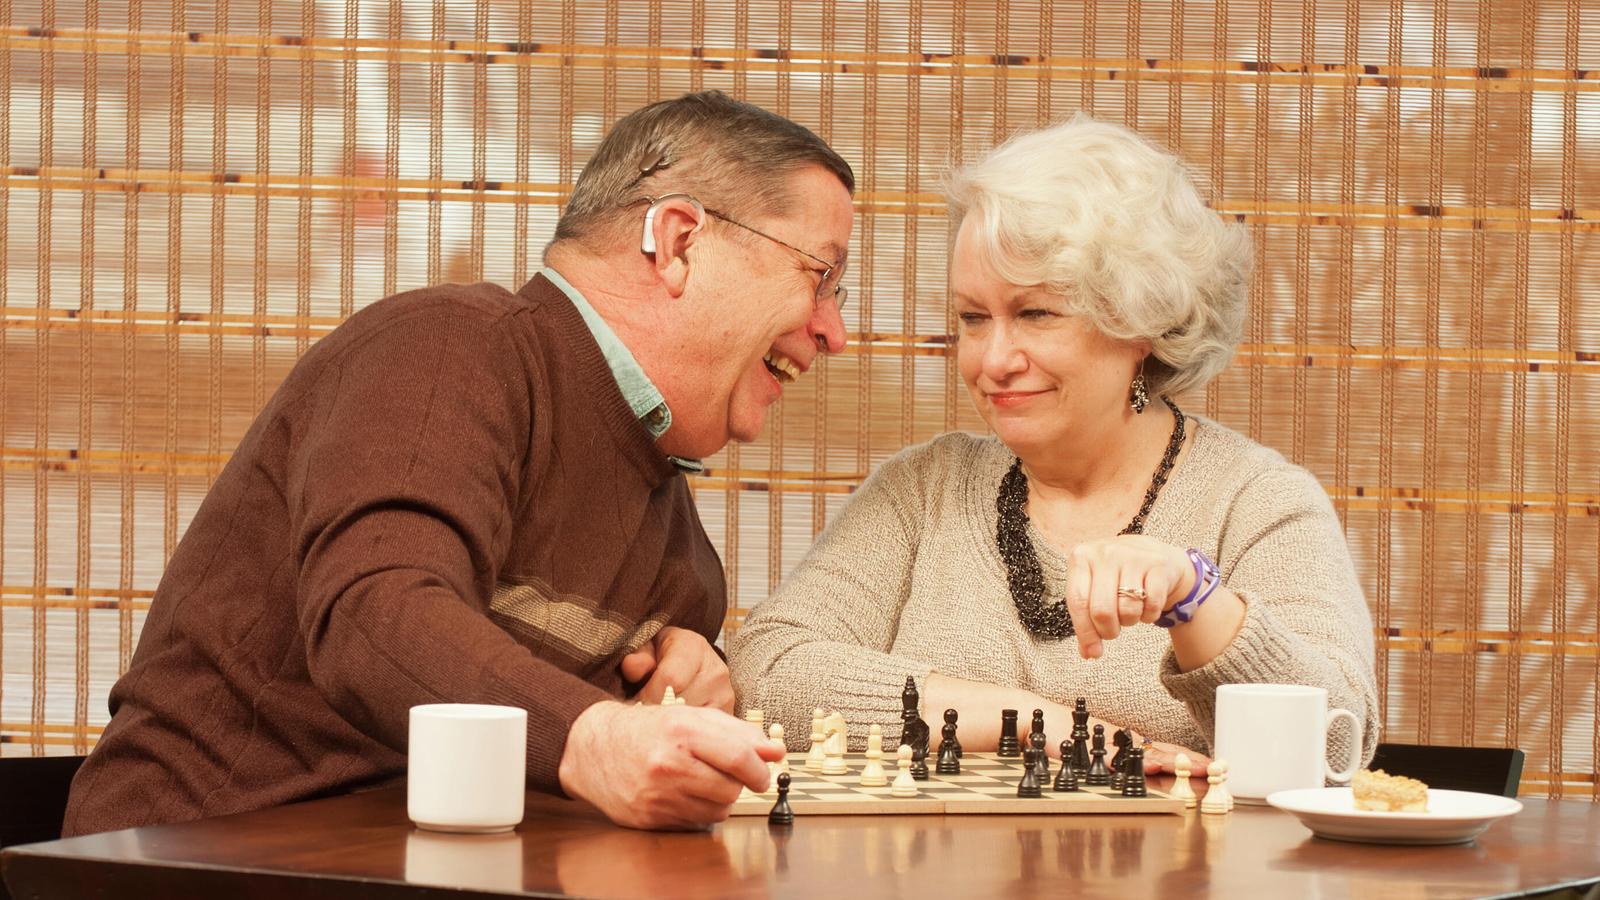 Bill, porteur d’implant, et sa femme Pam se détendent en jouant aux échecs